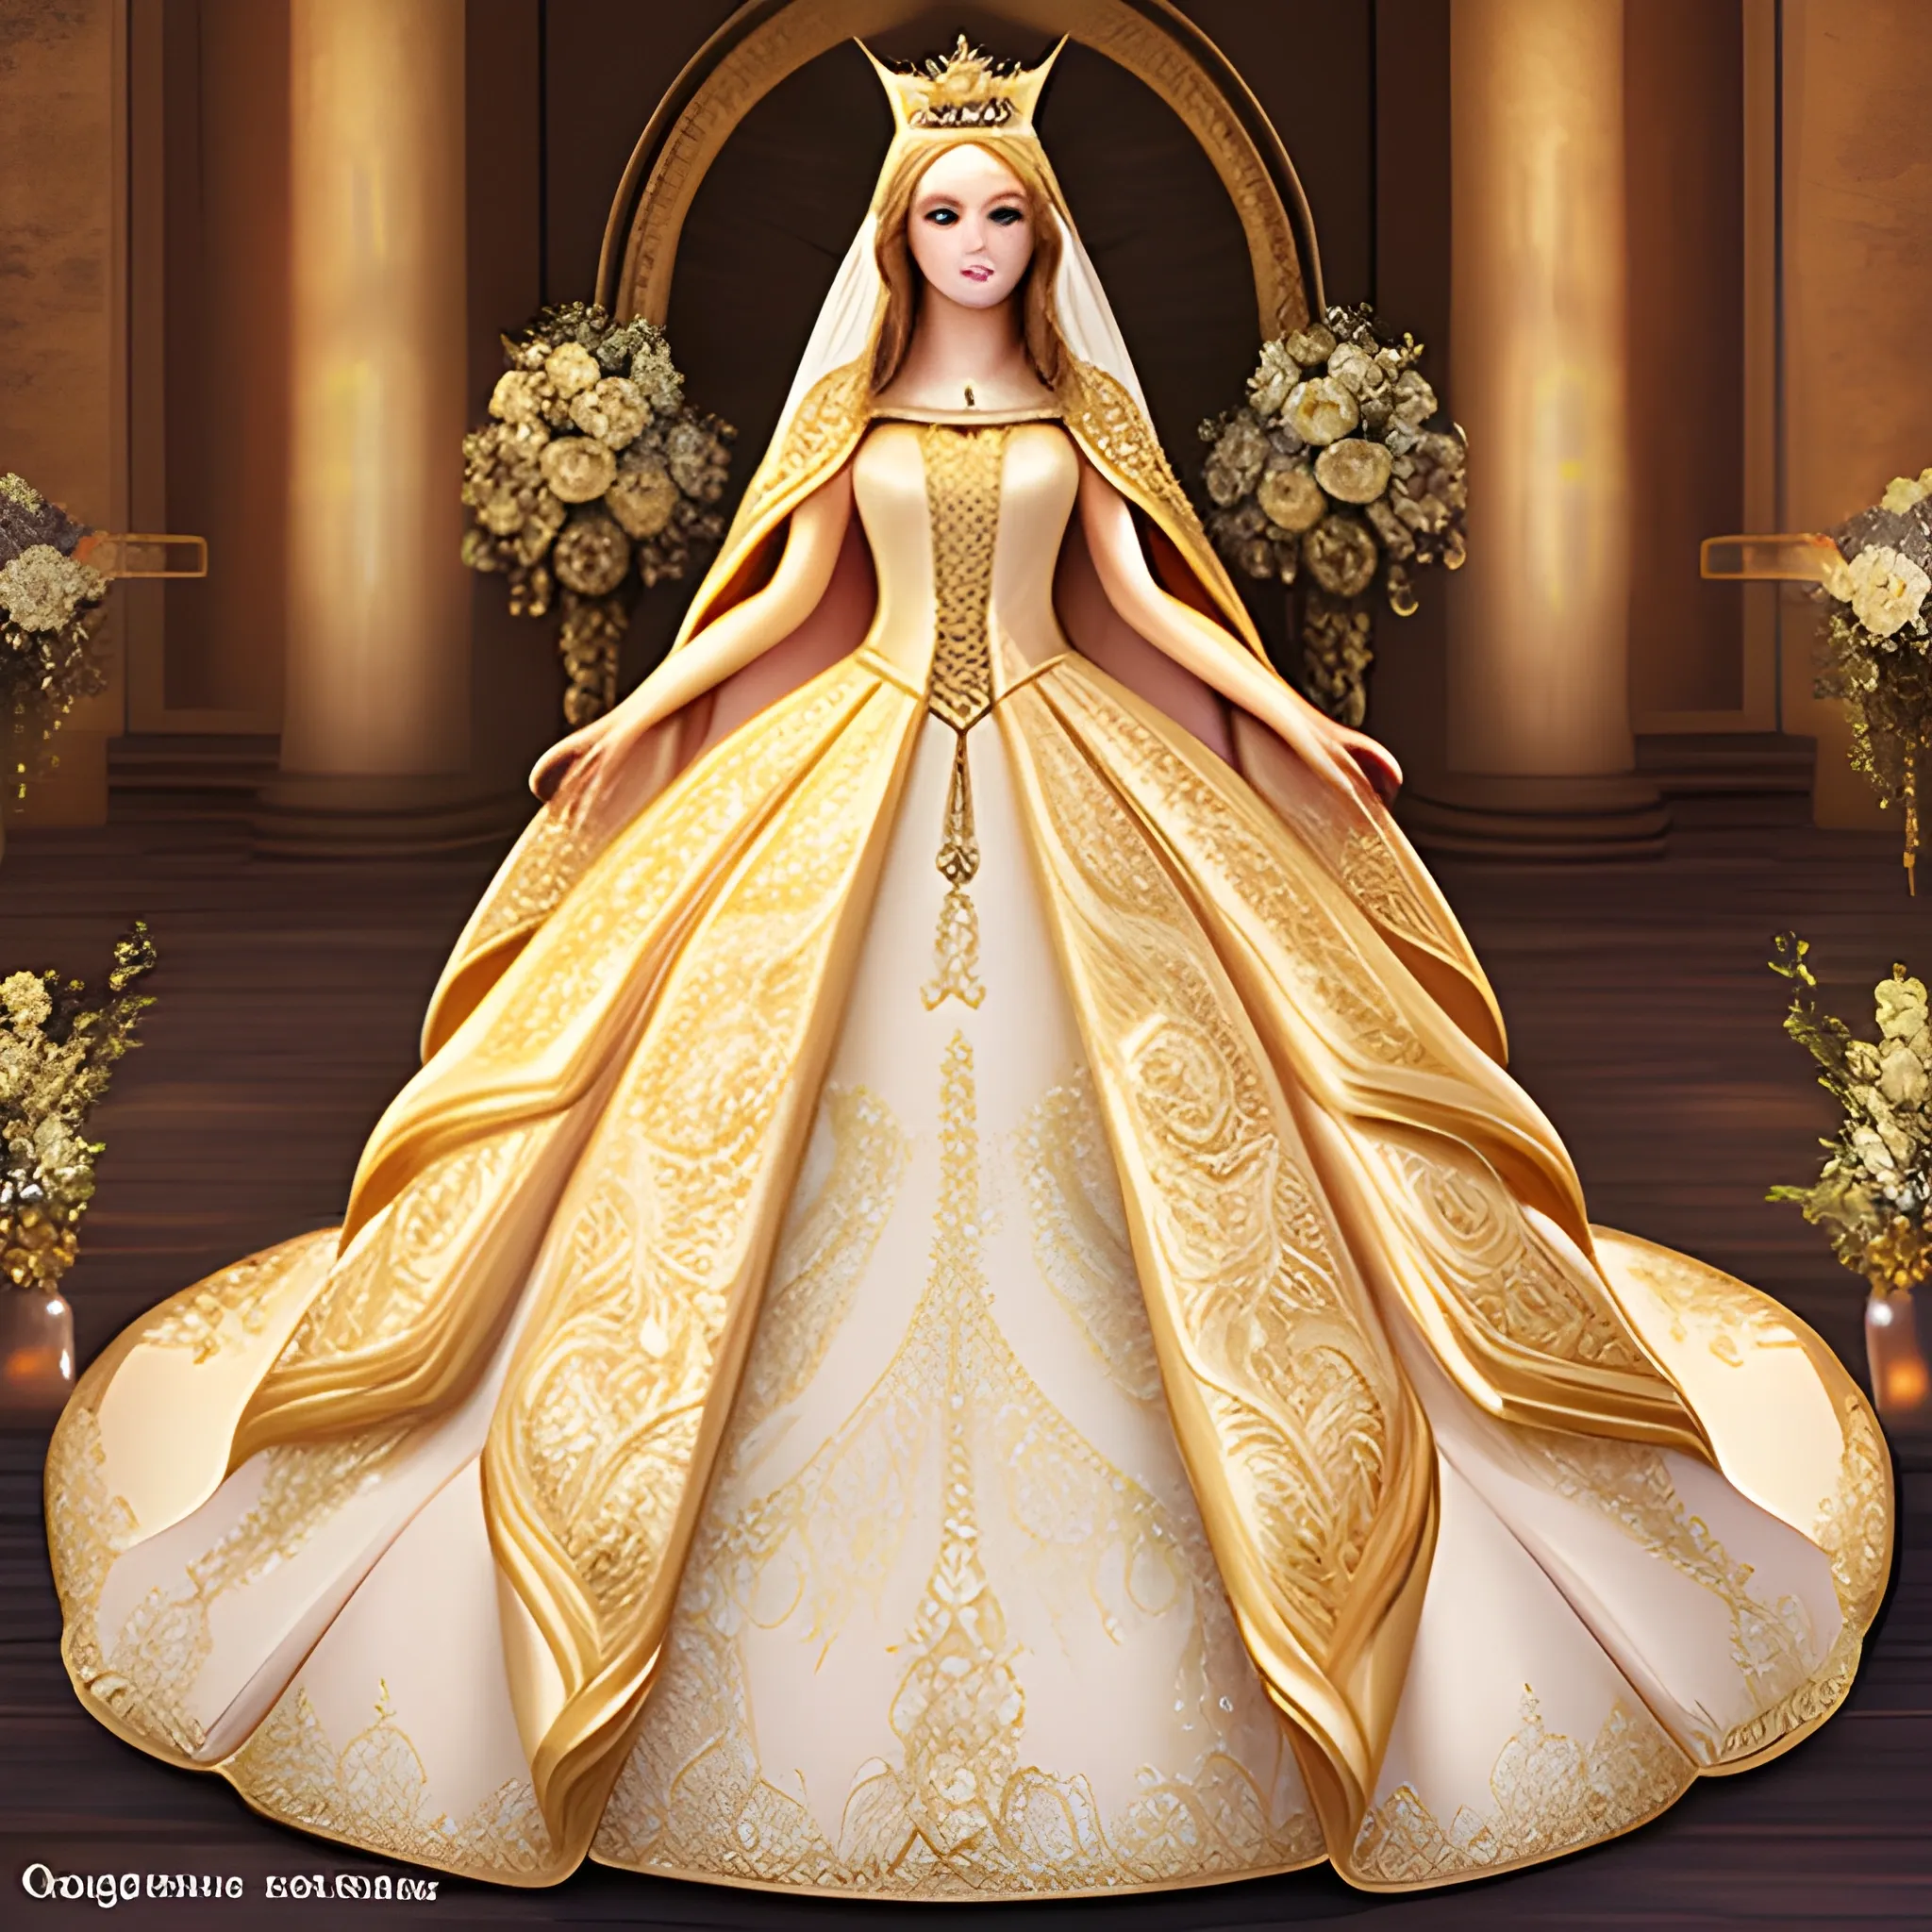 Golden galaxy goddess Angel Queen princess dream wedding dress with cape and high collar